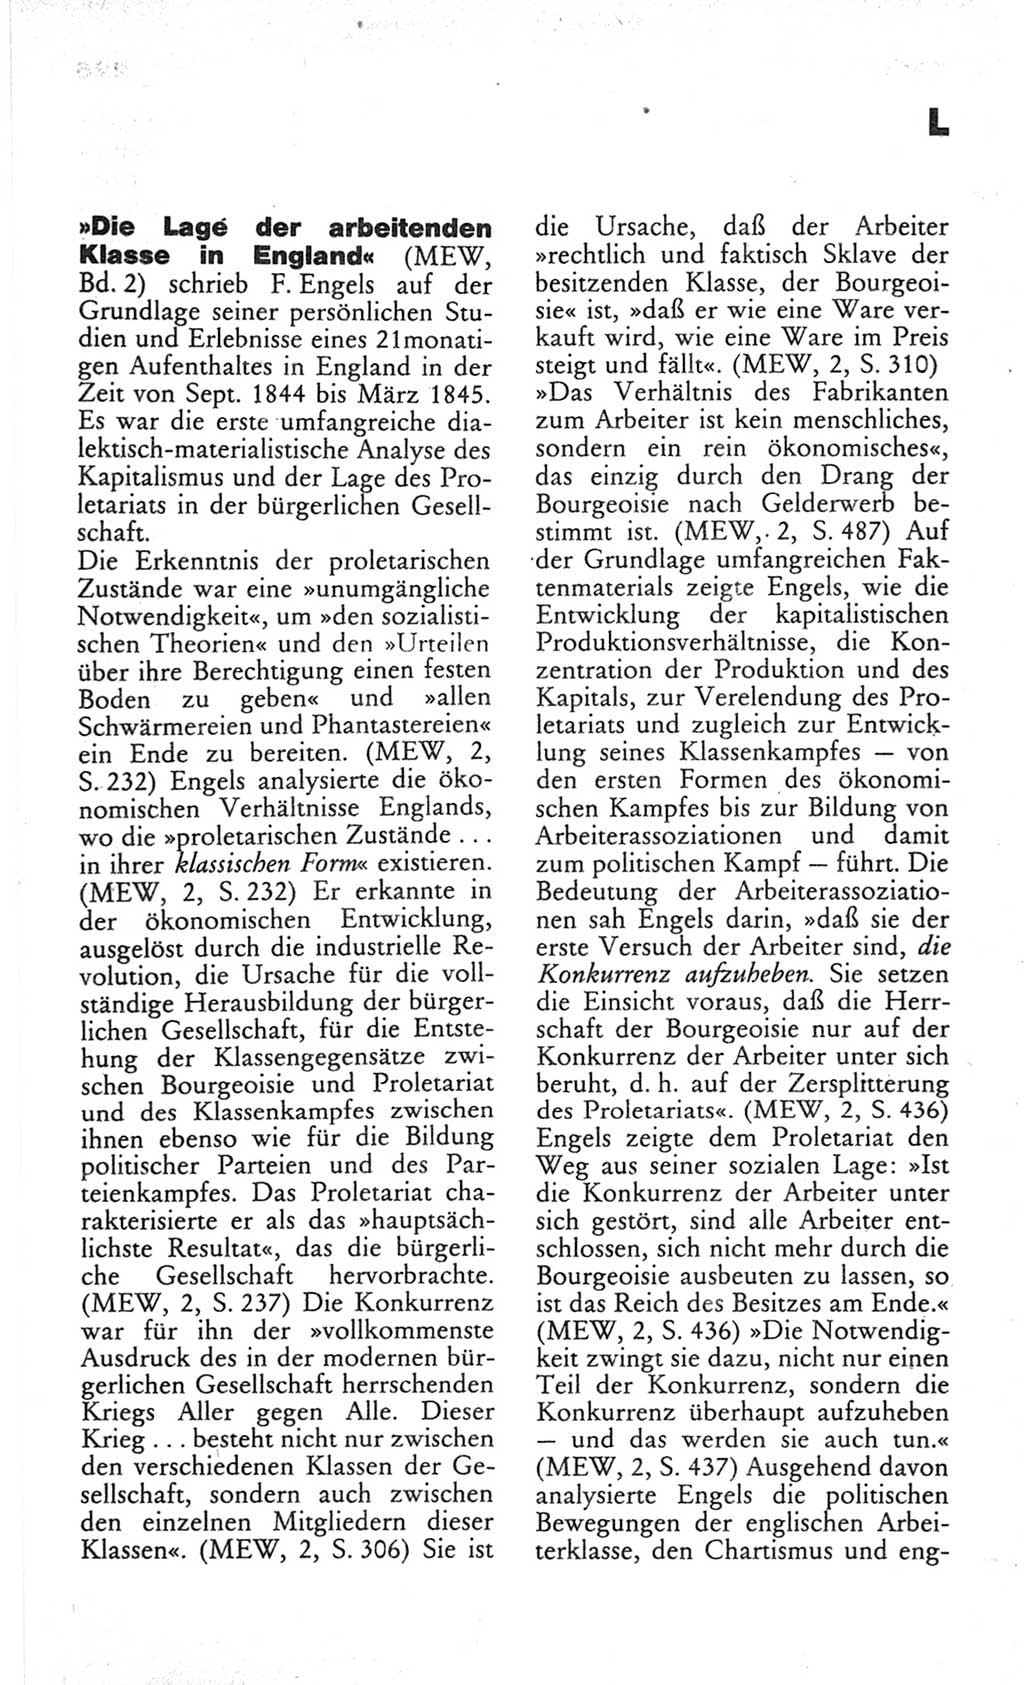 Wörterbuch des wissenschaftlichen Kommunismus [Deutsche Demokratische Republik (DDR)] 1982, Seite 227 (Wb. wiss. Komm. DDR 1982, S. 227)